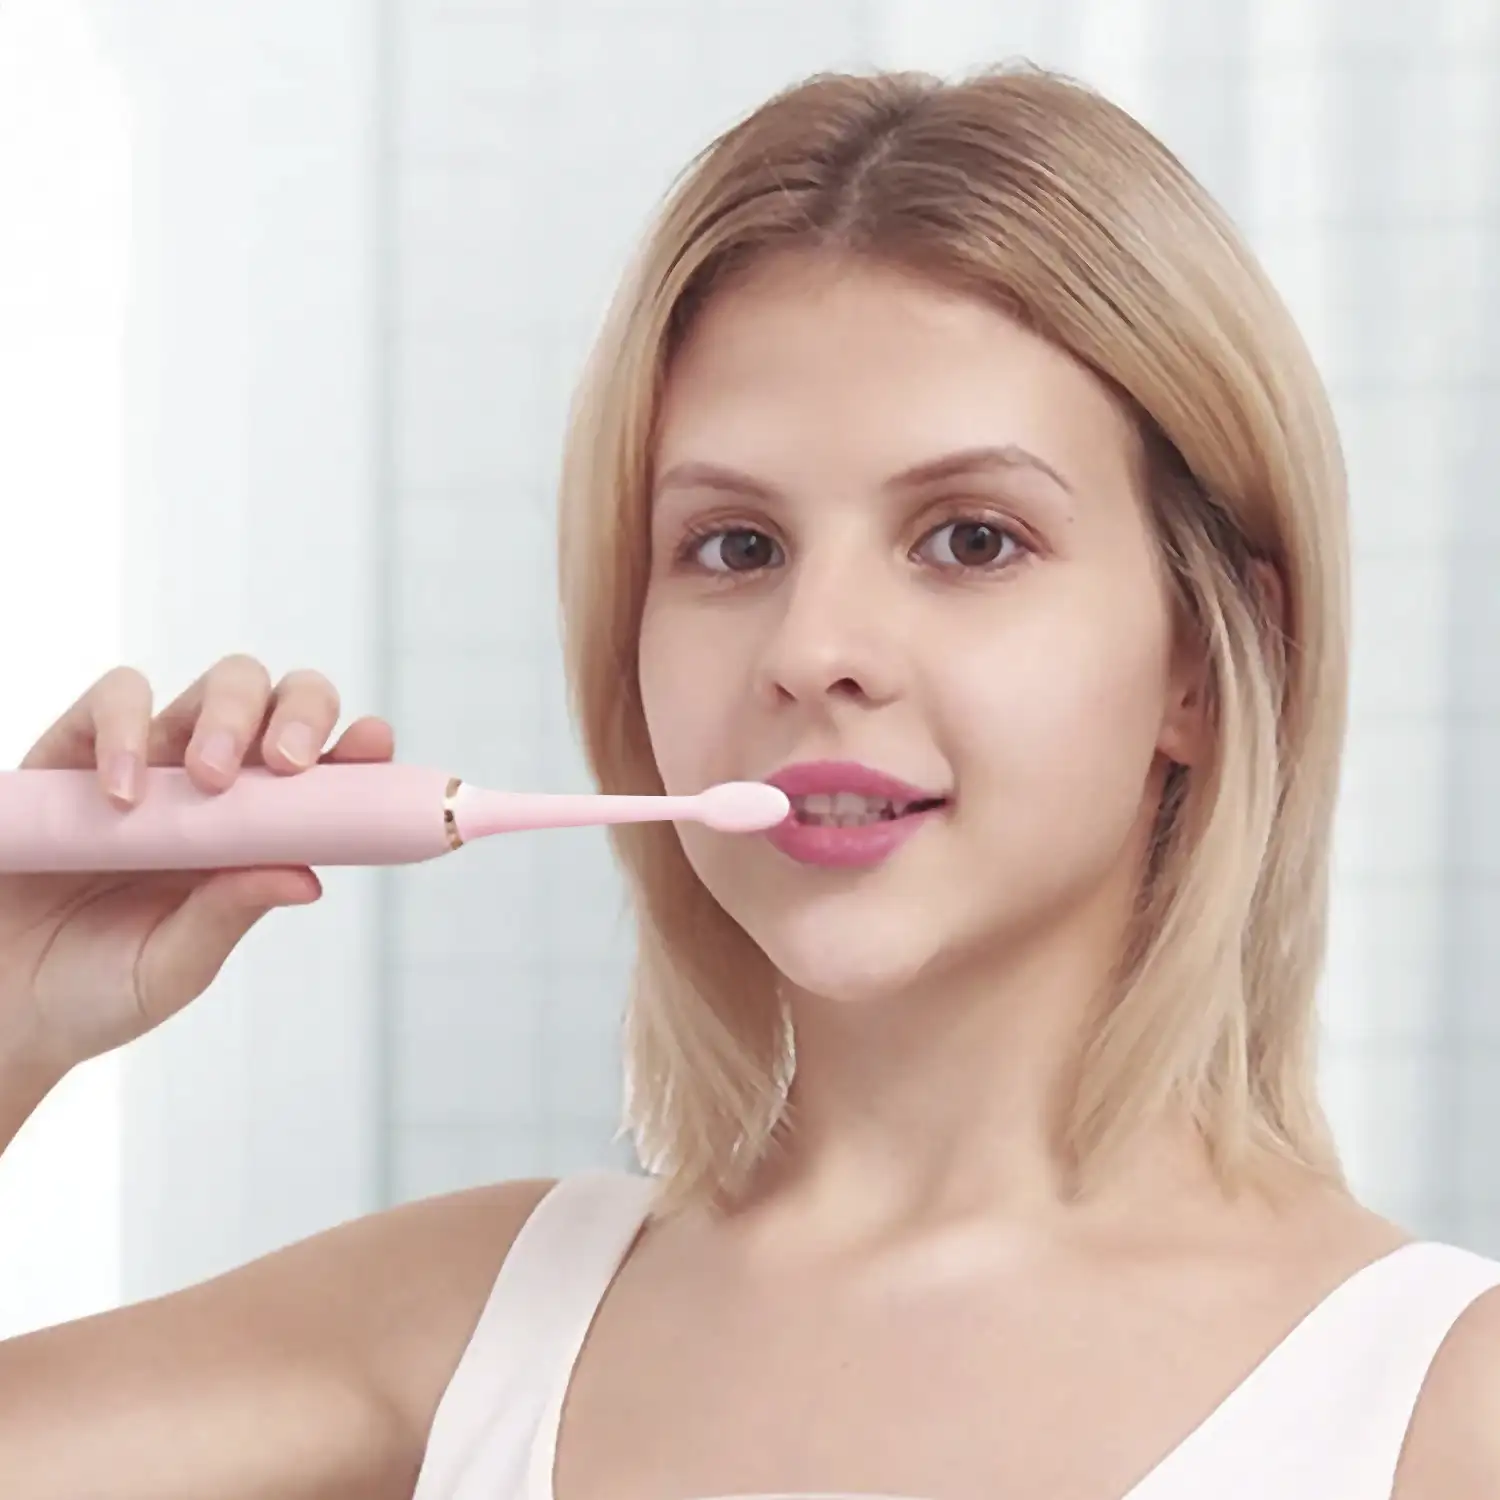 Cepillo de dientes eléctrico sónico 330. Modos limpiar, pulir, blanquear, sensible y masaje. Incluye 5 cabezales.